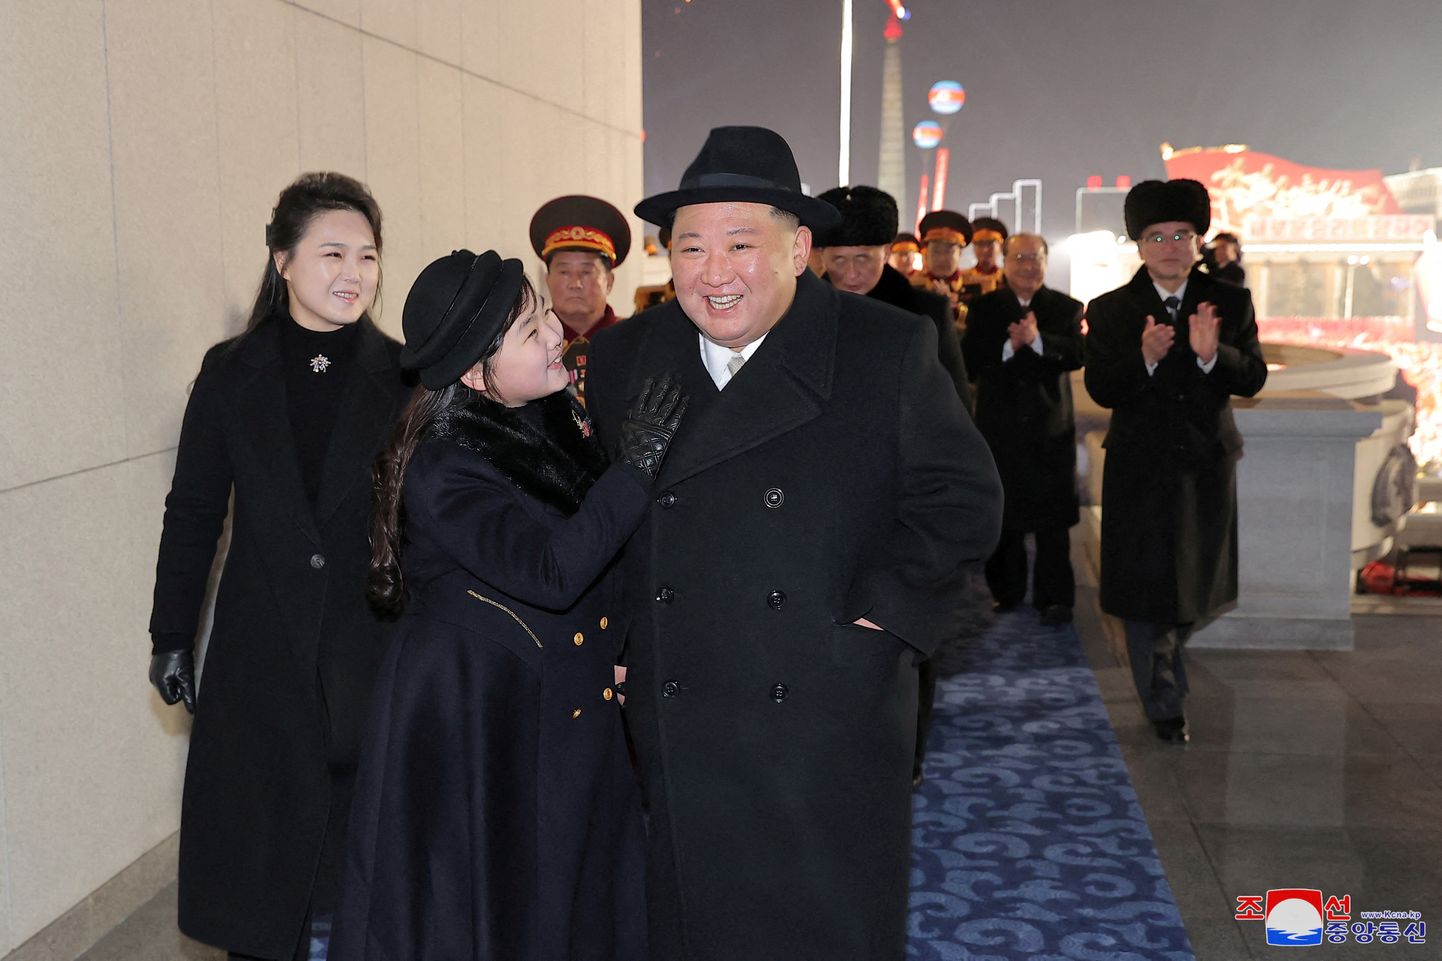 Põhja-Korea liider Kim Jong-un koos abikaasa Ri Sol-ju ja nende tütre Kim Ju-aega eelmisel nädalal sõjaväeparaadil Pyongyangis.